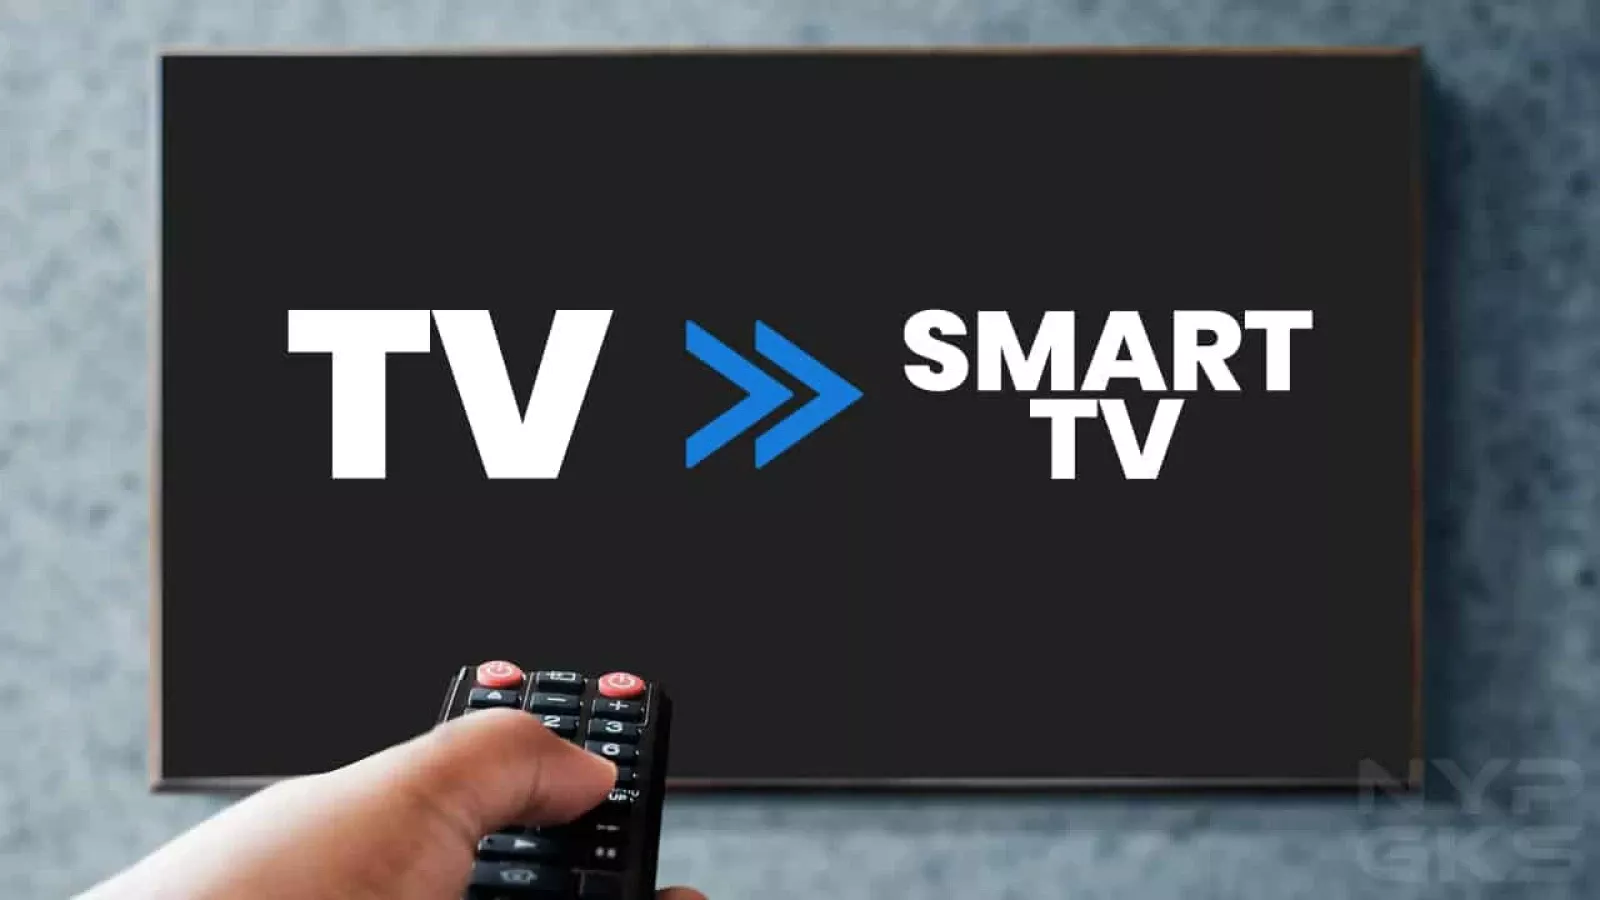 Noticia: ¿Cómo convertir su viejo tv en un Smart tv?, Categoría:  Capacitaciones y Tutoriales